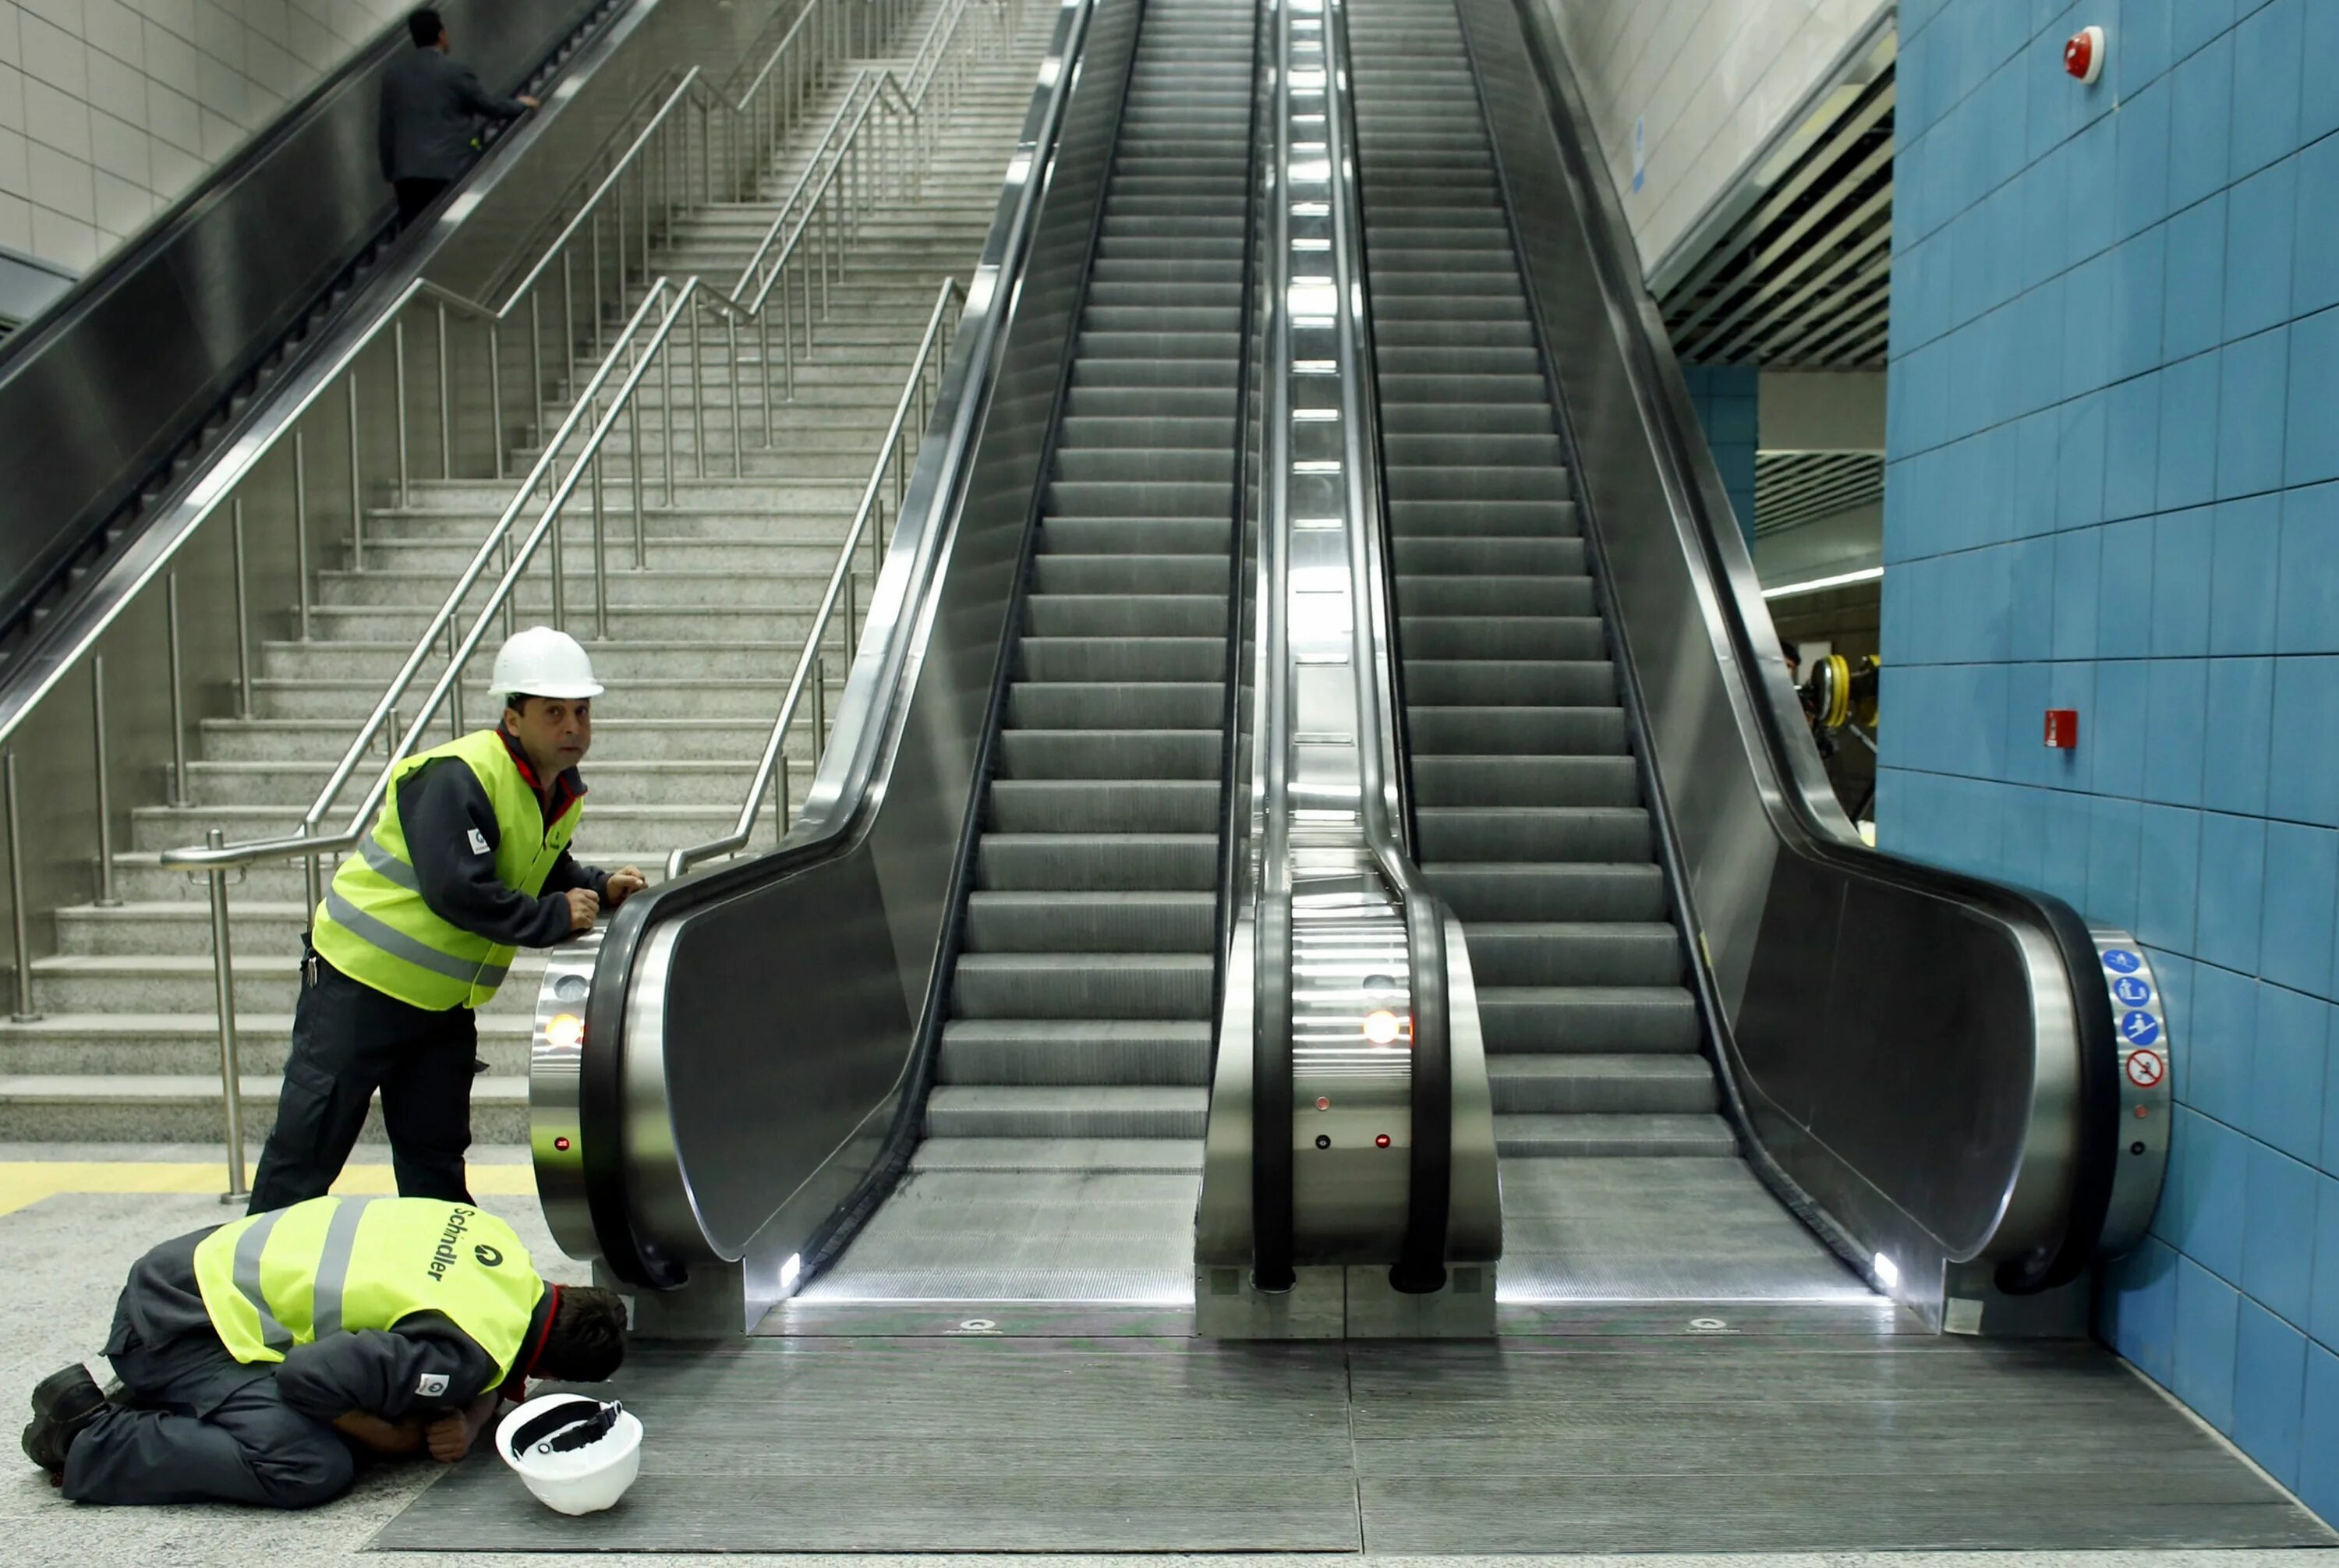 Эскалатор метрополитена поднимает неподвижно. Метро в Стамбуле эскалатор. Эскалатор в метро. Метрополитен эскалатор. Люди на эскалаторе.